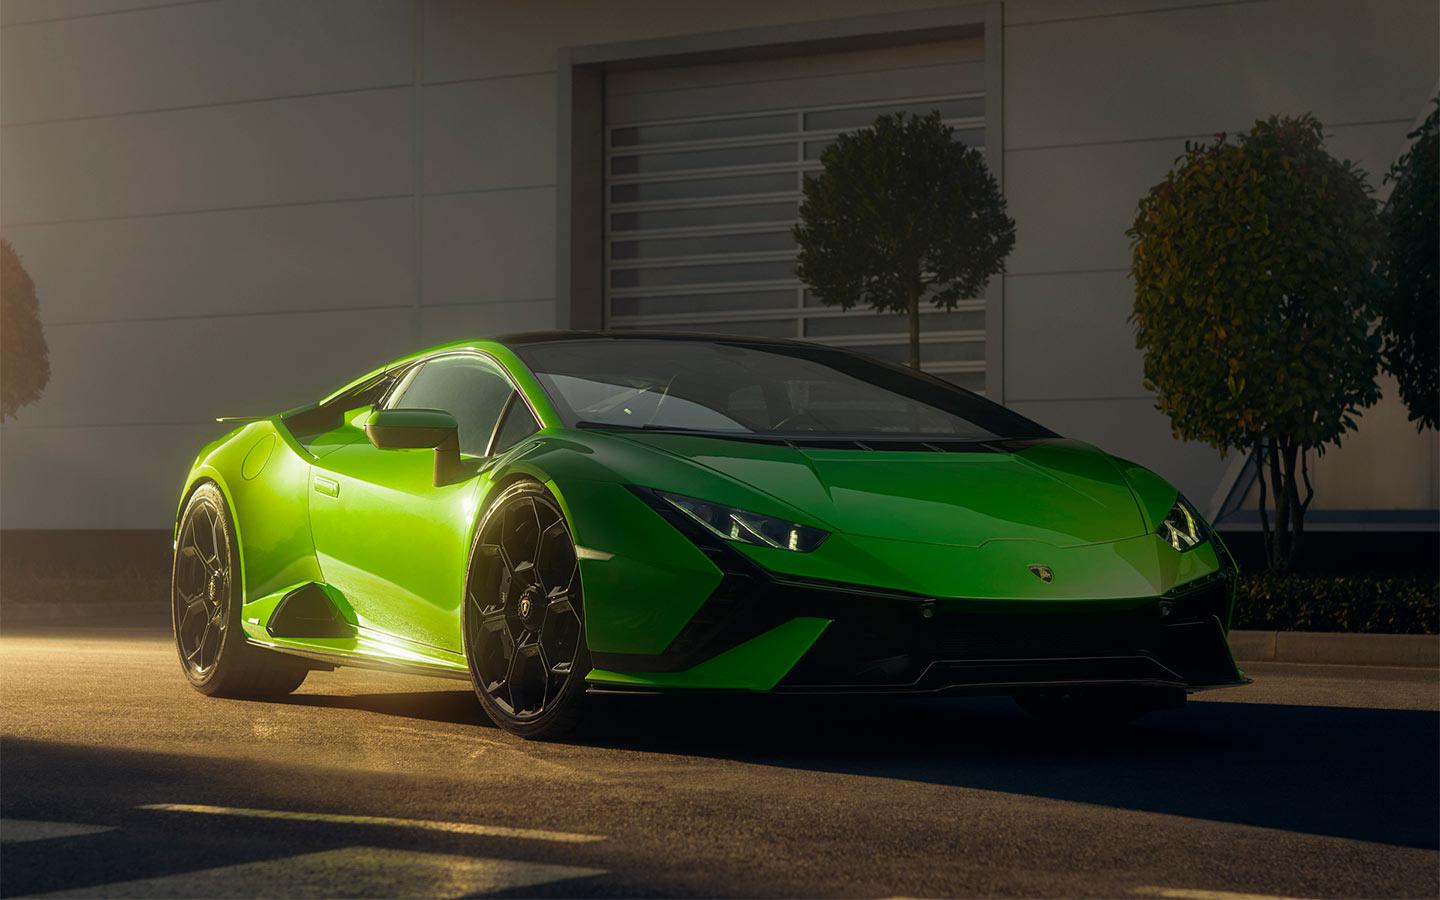 Lamborghini отчиталась о рекордных продажах